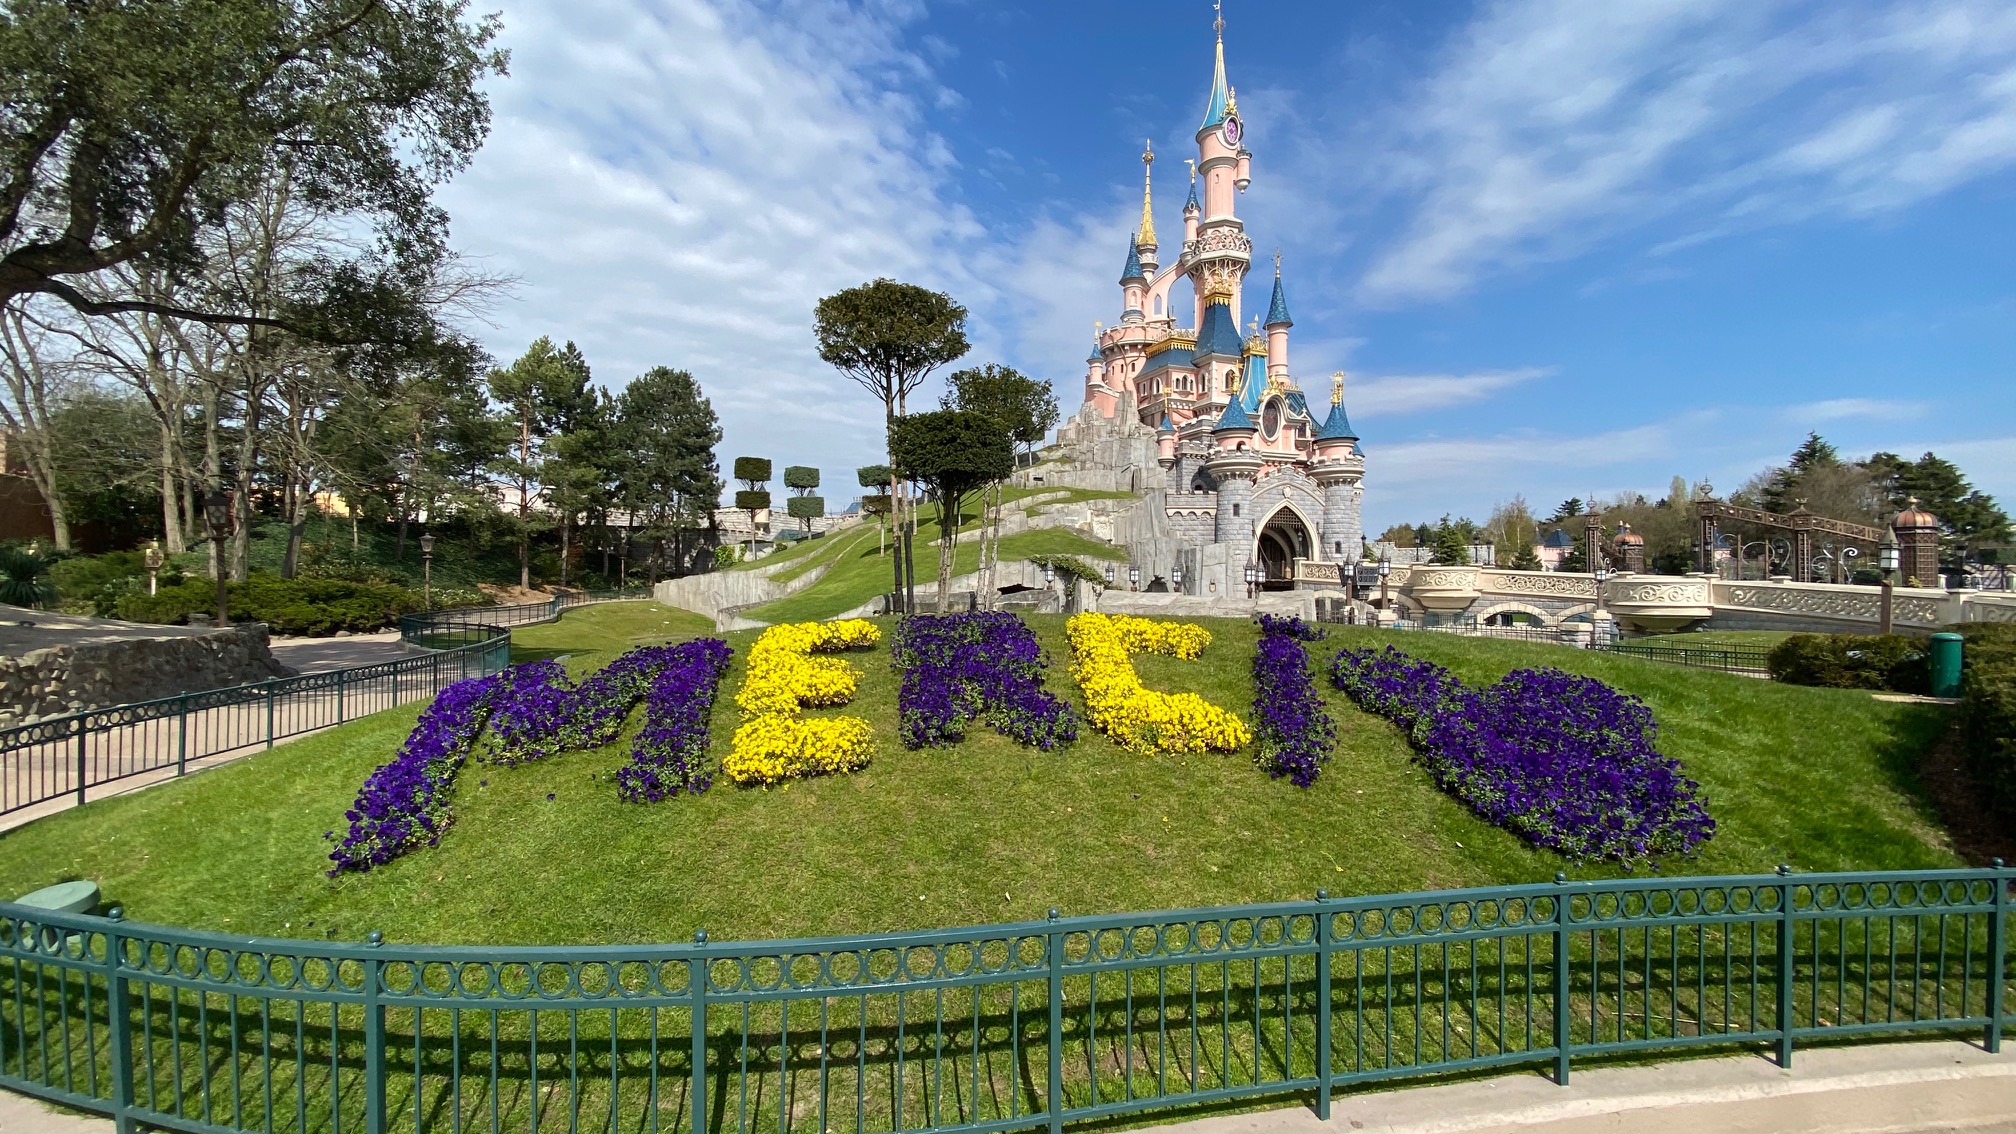 Les Cast Members de Disneyland Paris montrent leur soutien aux professionnels de santé